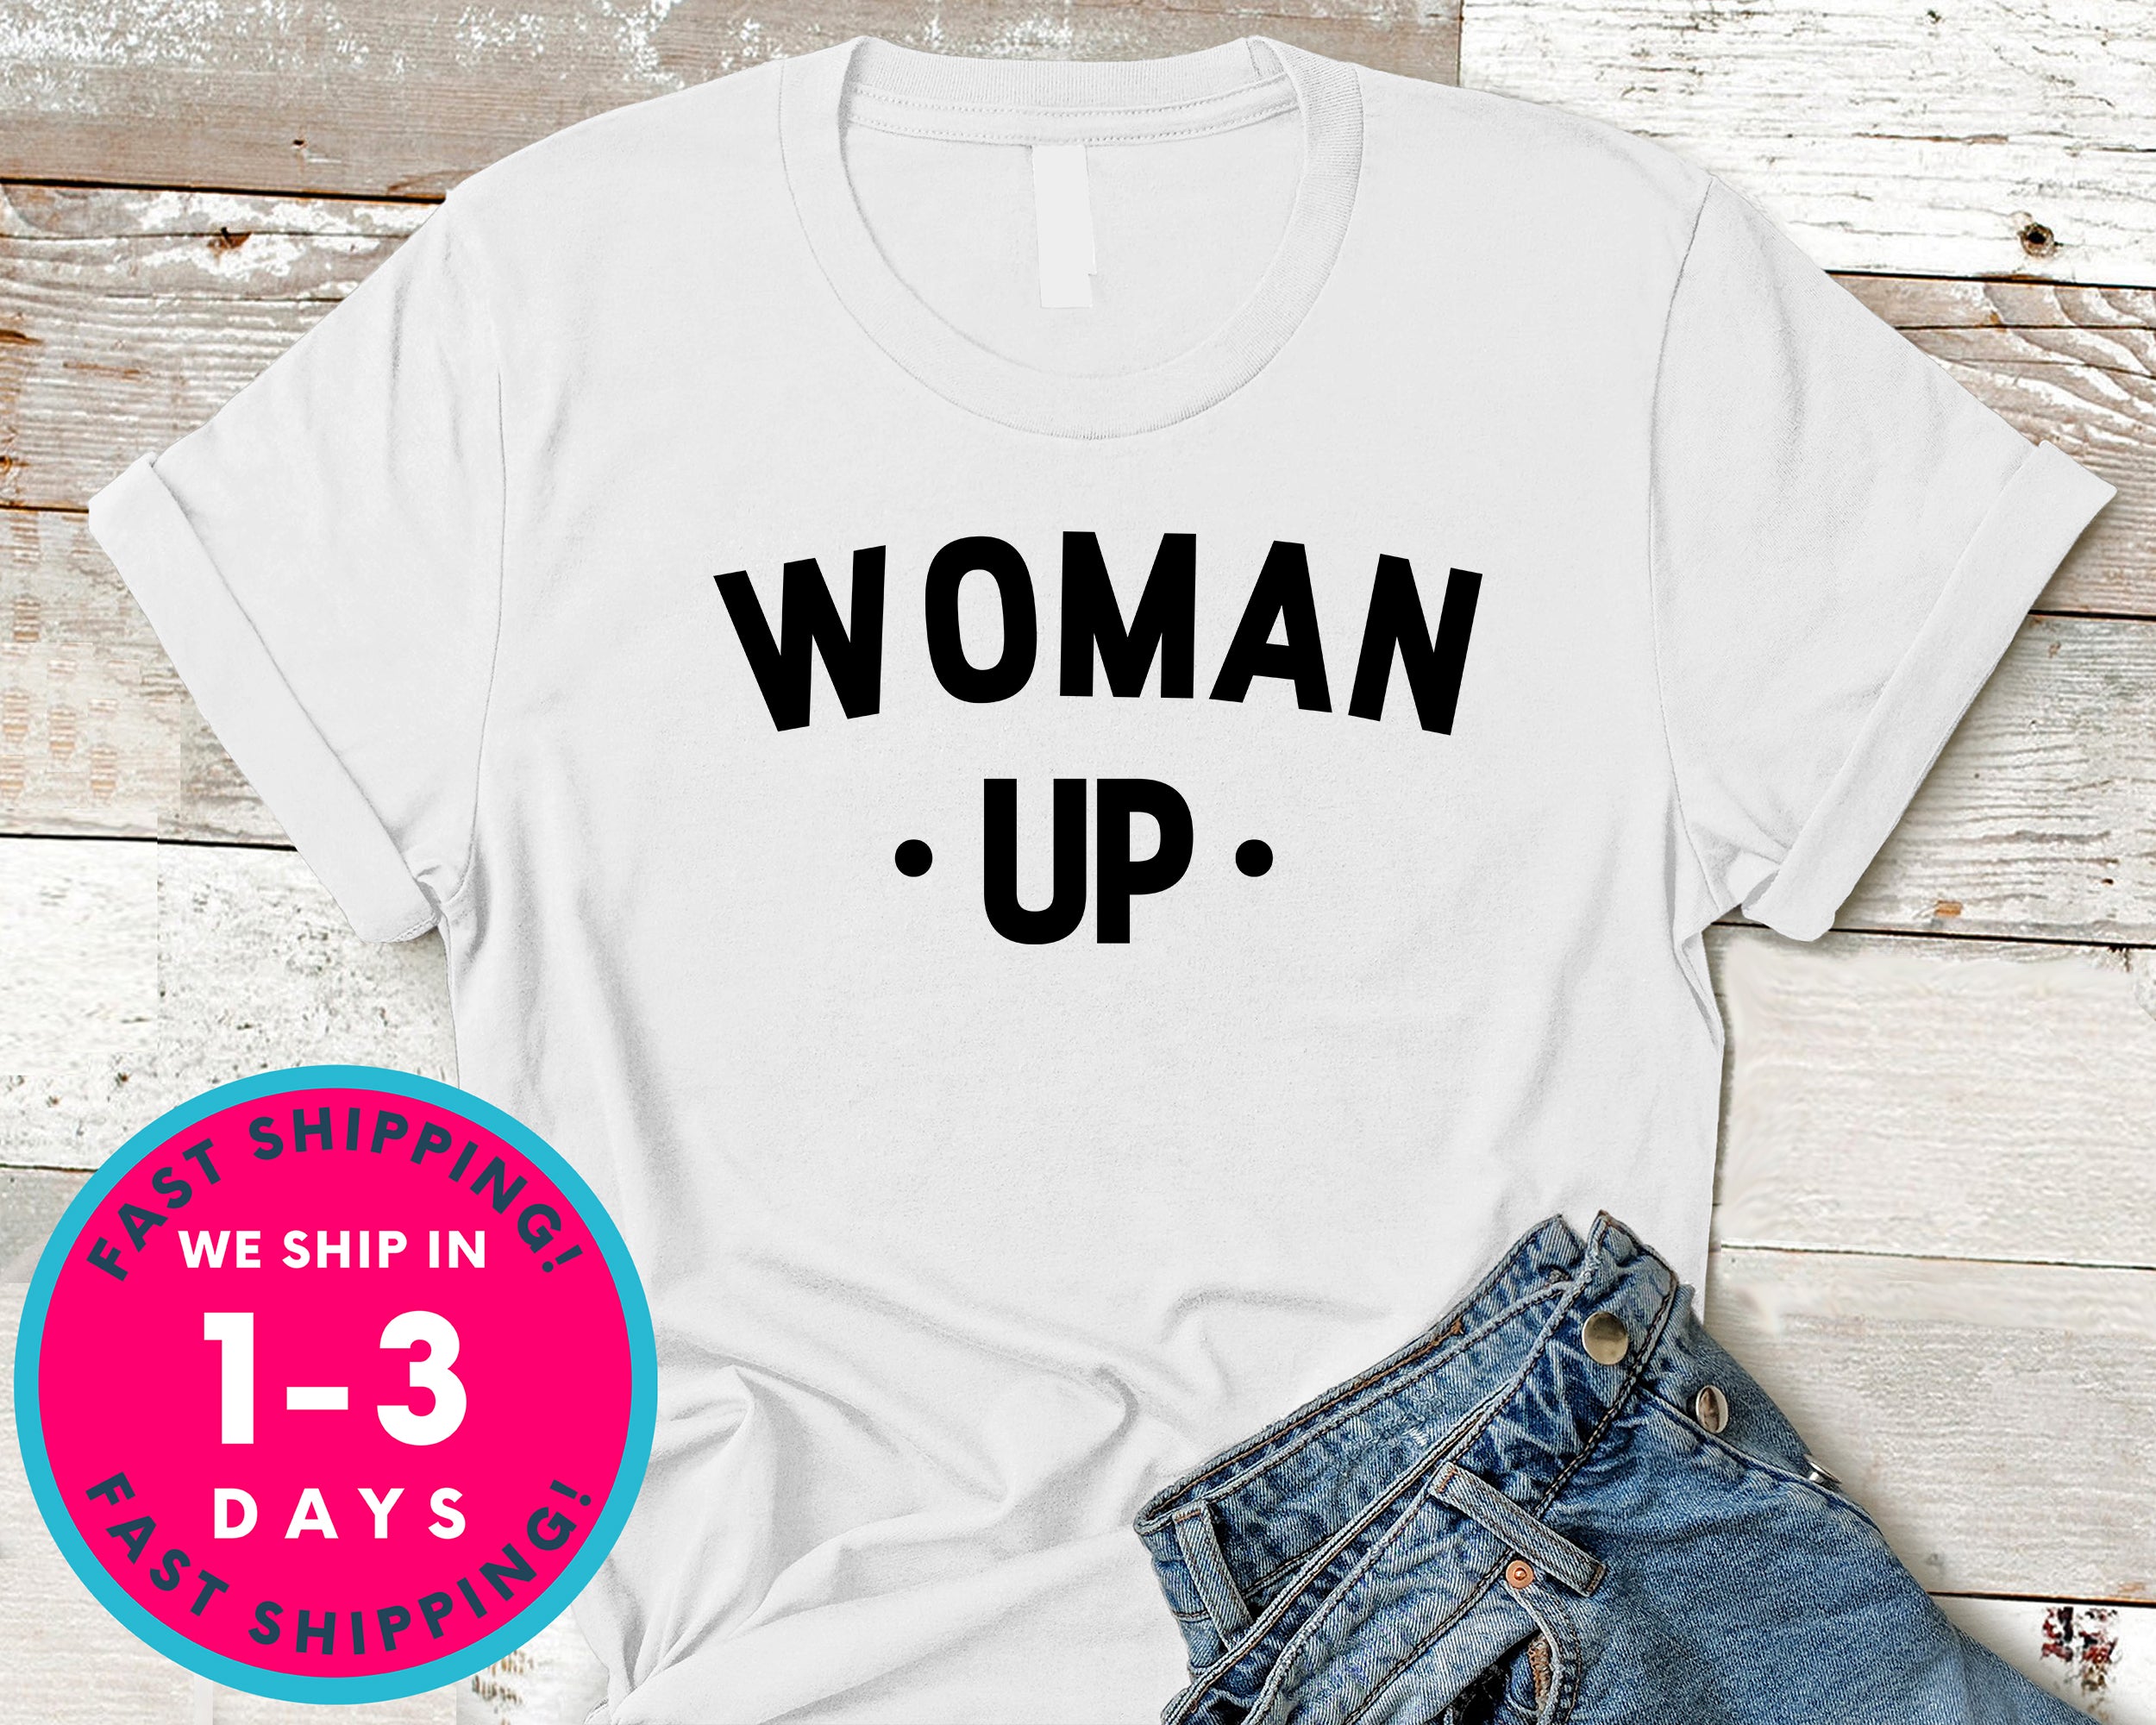 Woman Up T-Shirt - Political Activist Shirt